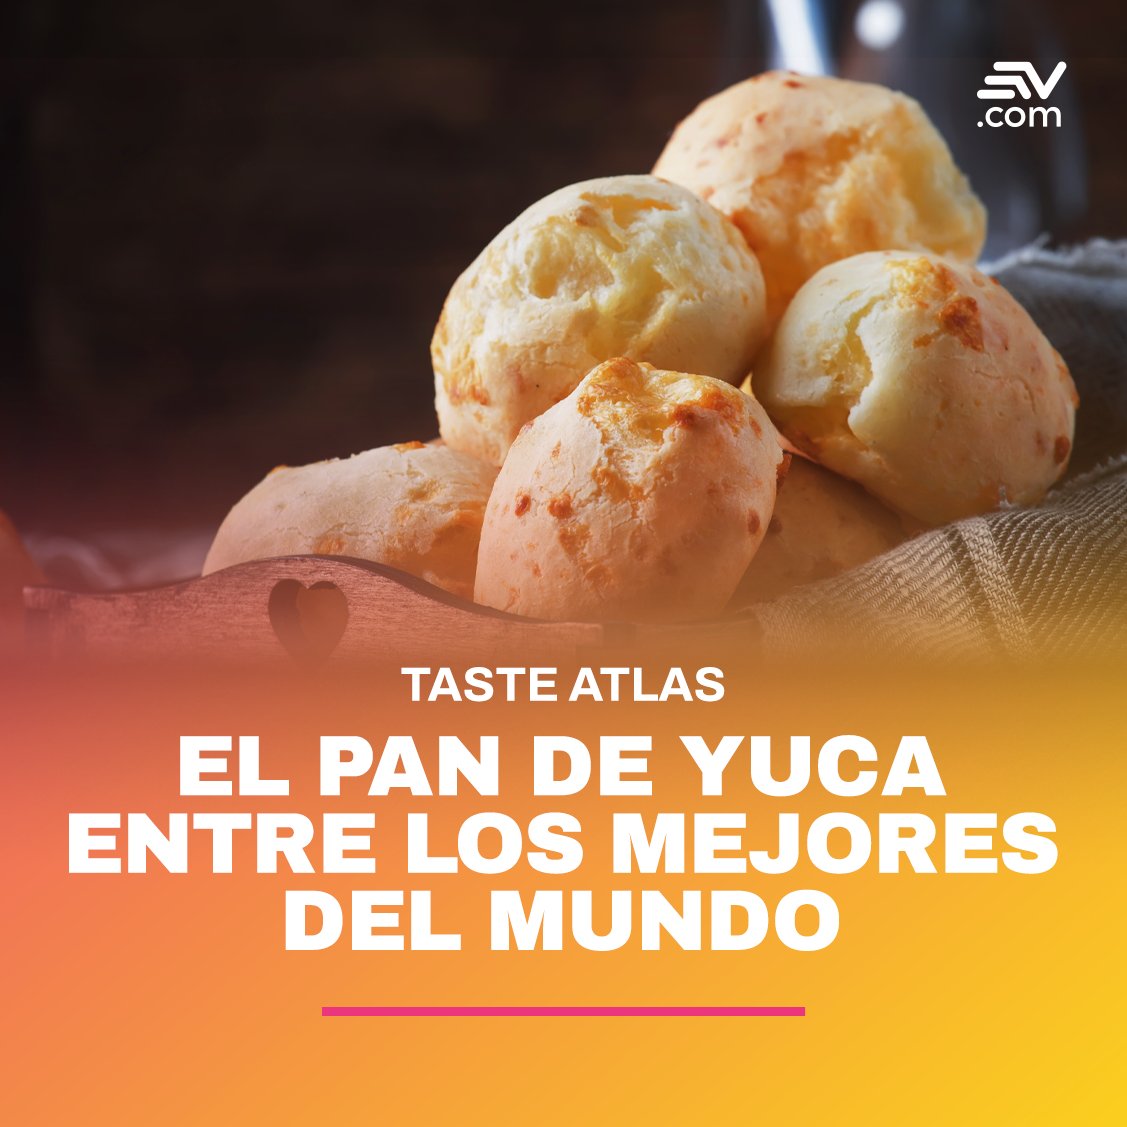 #LoMásLeído | El ranking internacional gastronómico Taste Atlas, colocó al Pan de Yuca ecuatoriano y colombiano en el top cinco de los mejores panecillos alrededor del mundo. Más detalles ▶️ bit.ly/3wA1bzy